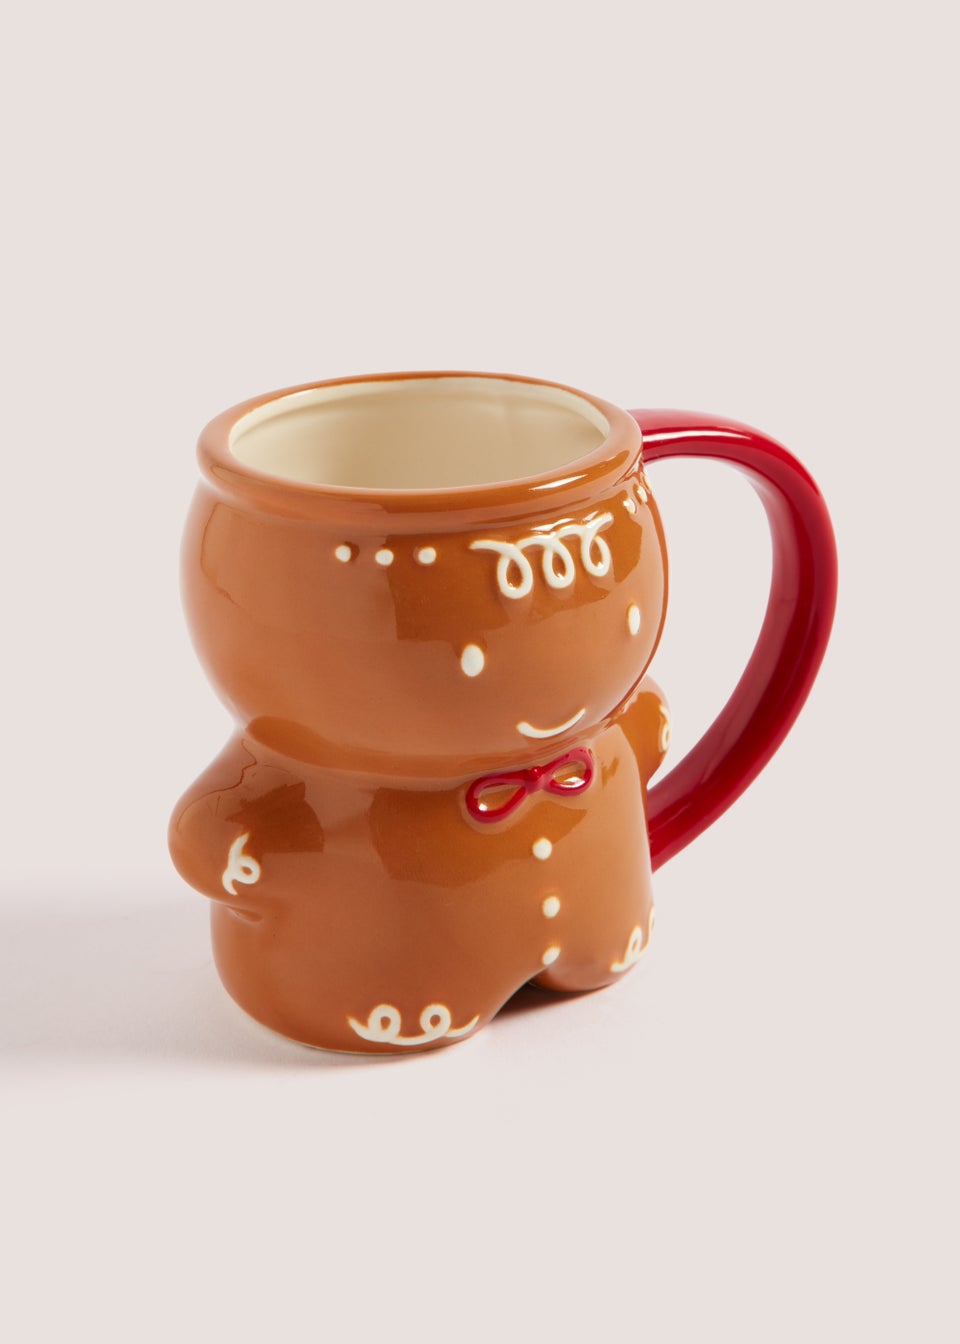 Gingerbread Man Mug (10cm x 8.5cm)